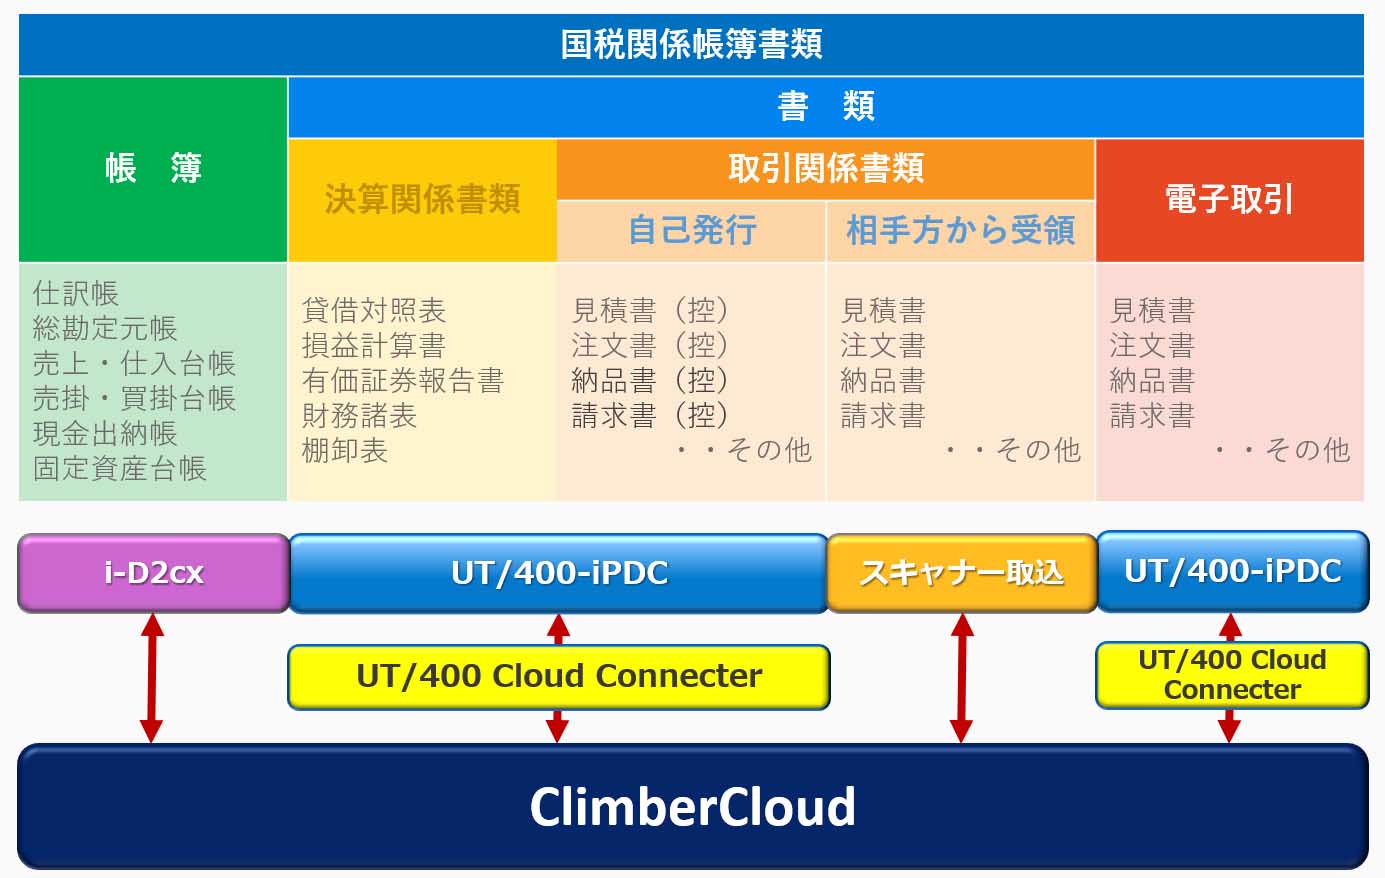 UT/400-iPDC・ClimberCloud連携による電子帳簿保存法への対応